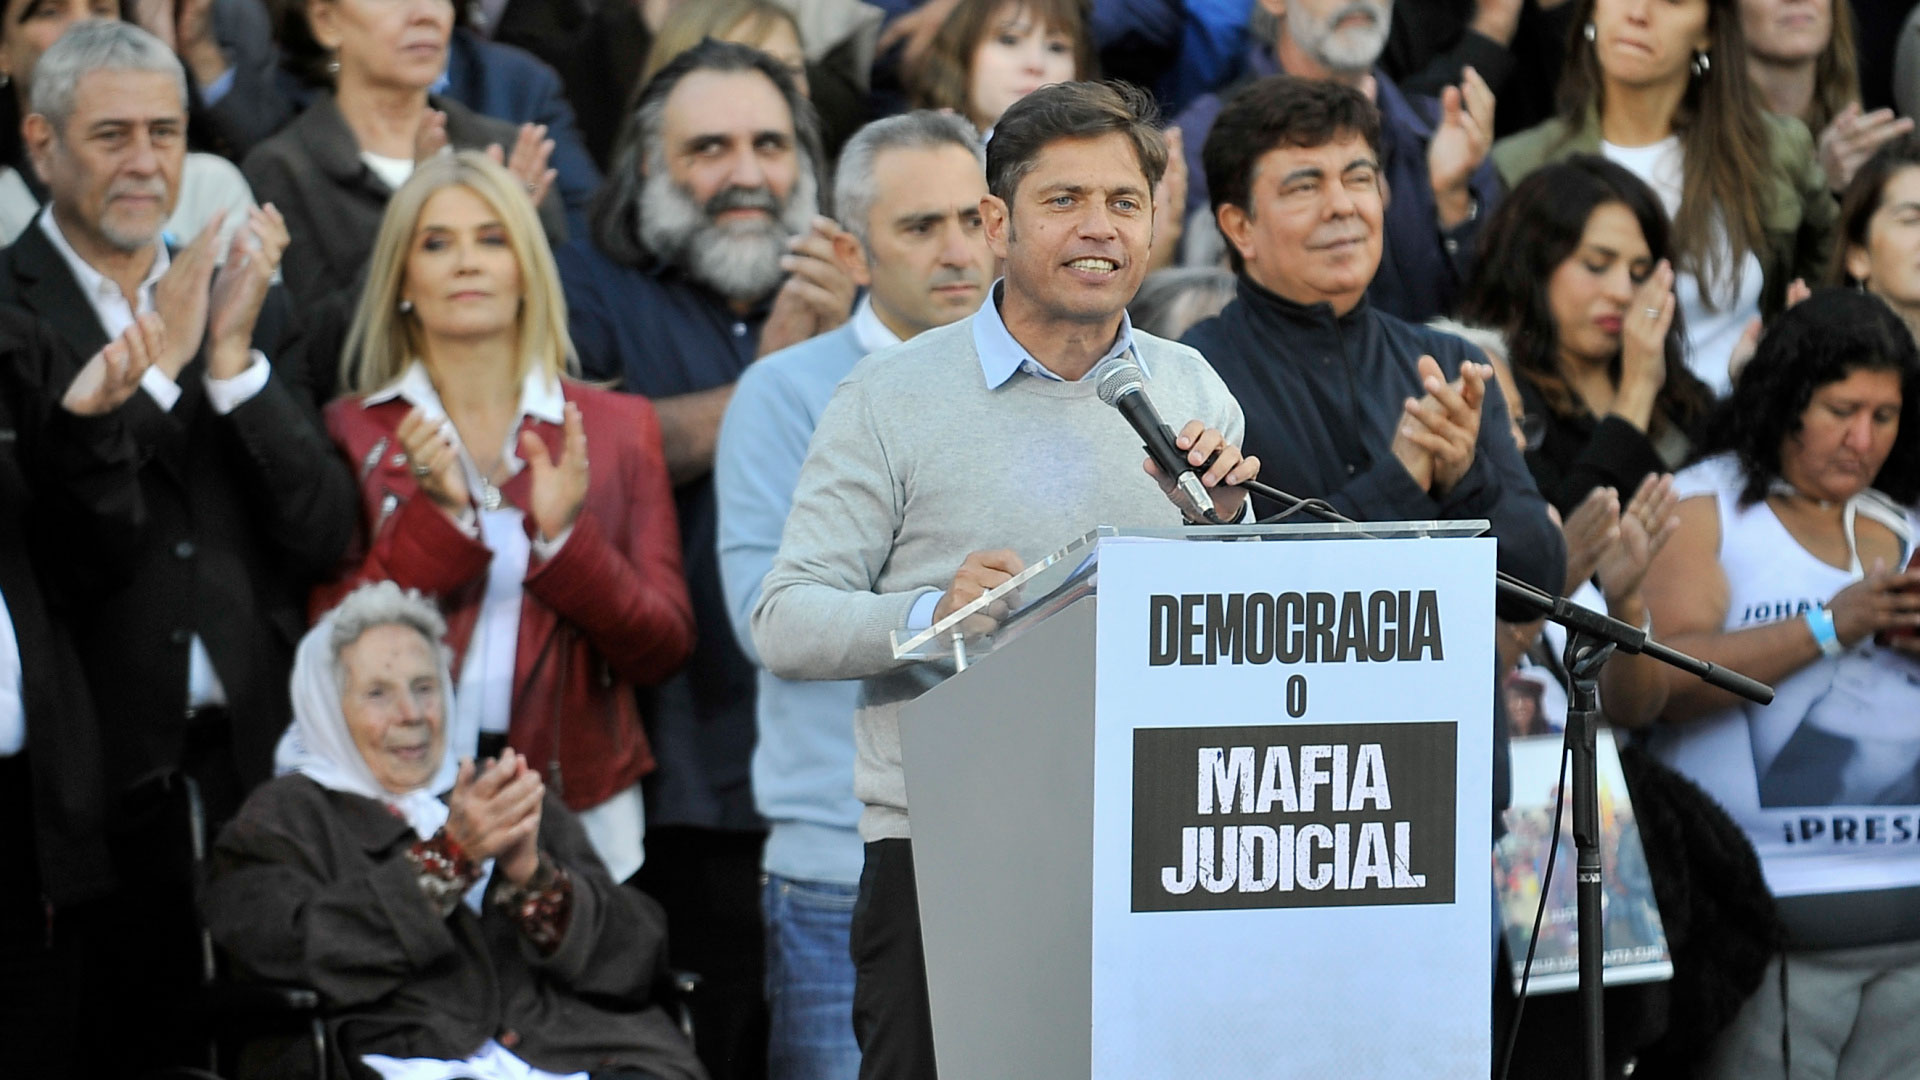 Axel Kicillof habló en el acto en Plaza Lavalle. Apoyó a Cristina Kirchner y apuntó contra la "mafia judicial". (foto Gustavo Gavotti)